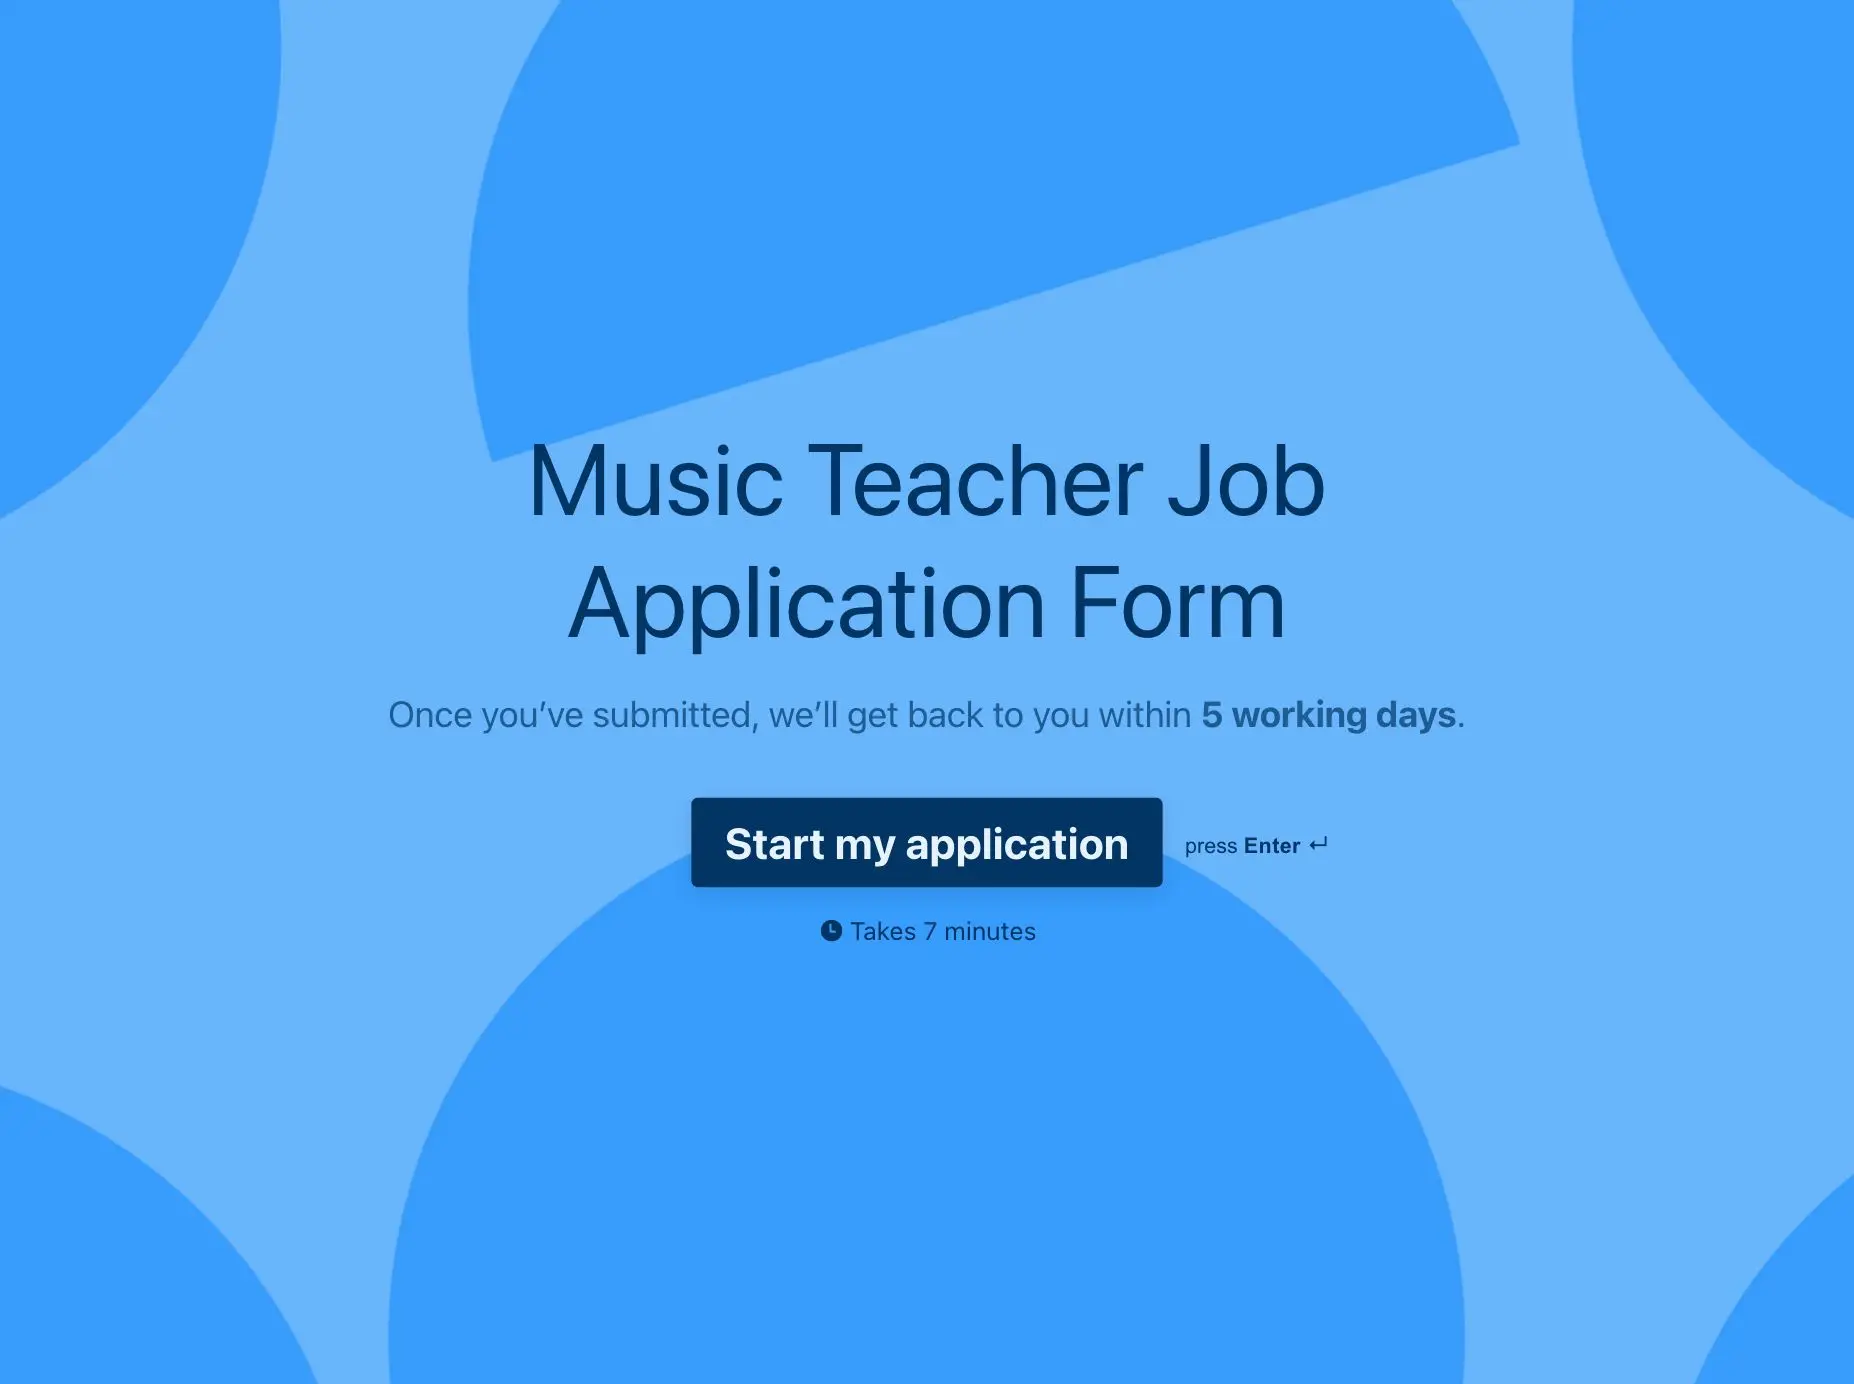 Music Teacher Job Application Form Template Hero